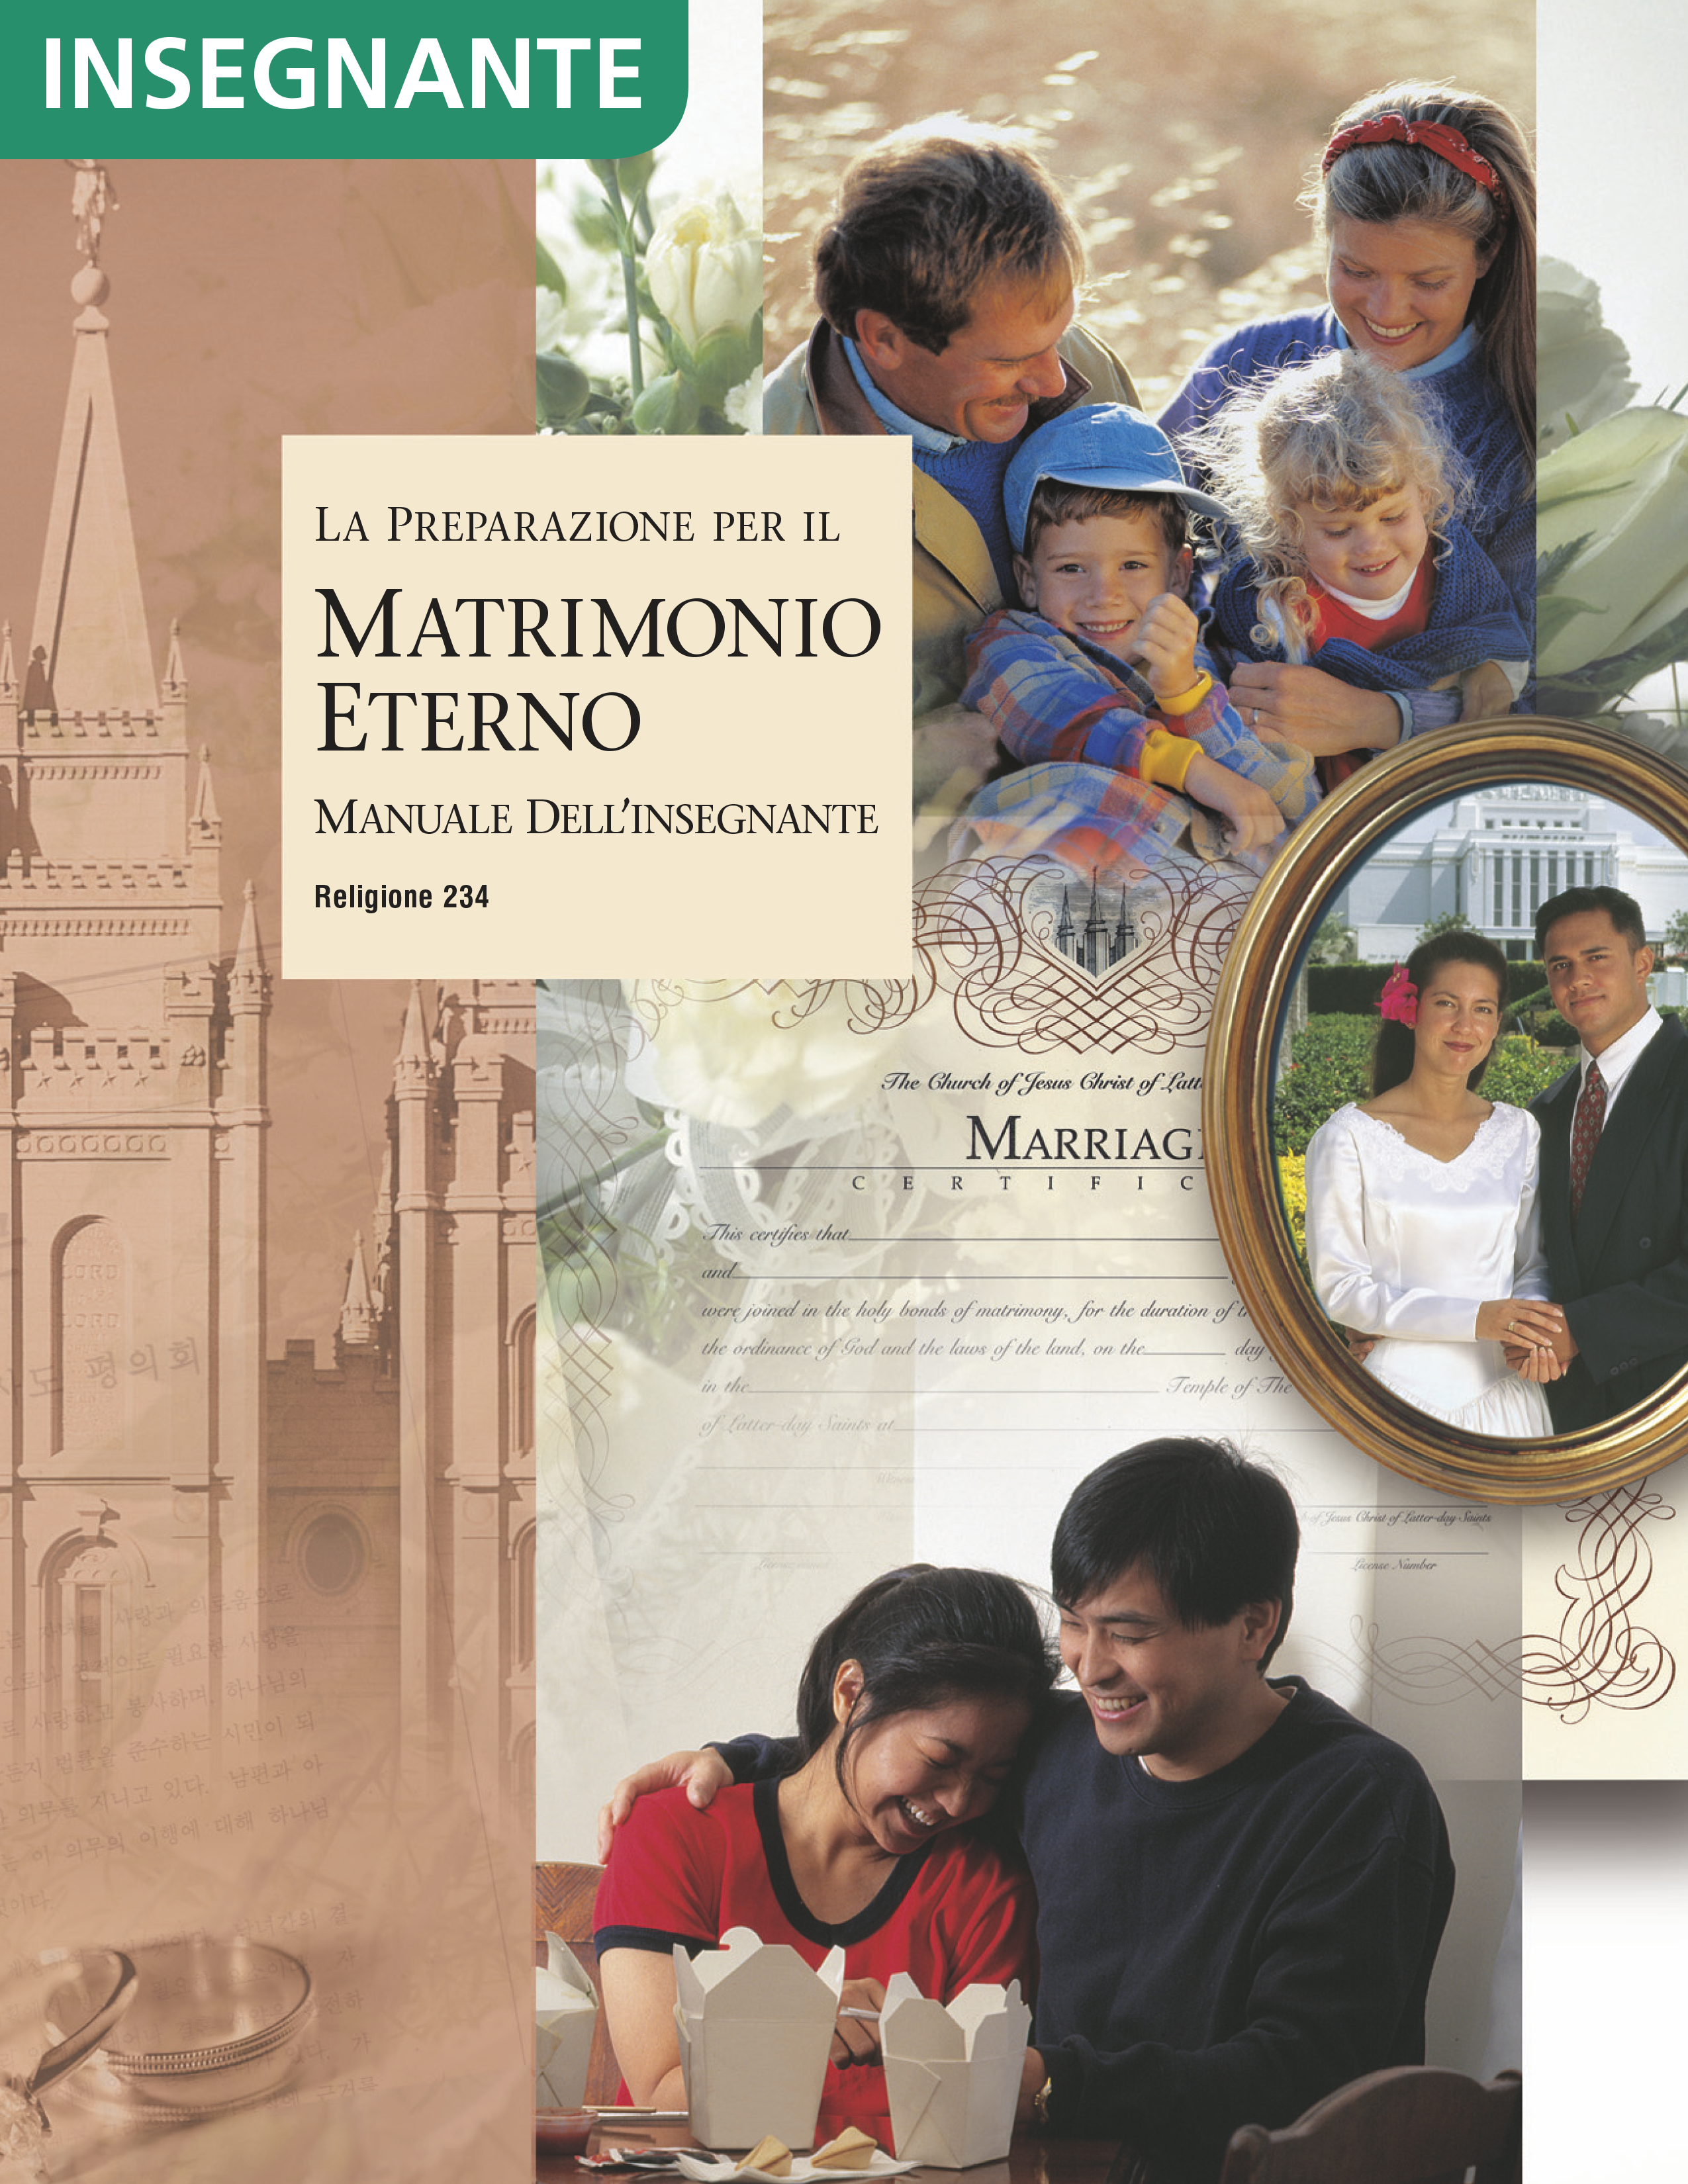 La preparazione per il matrimonio eterno – Manuale dell’insegnante (Religione 234)